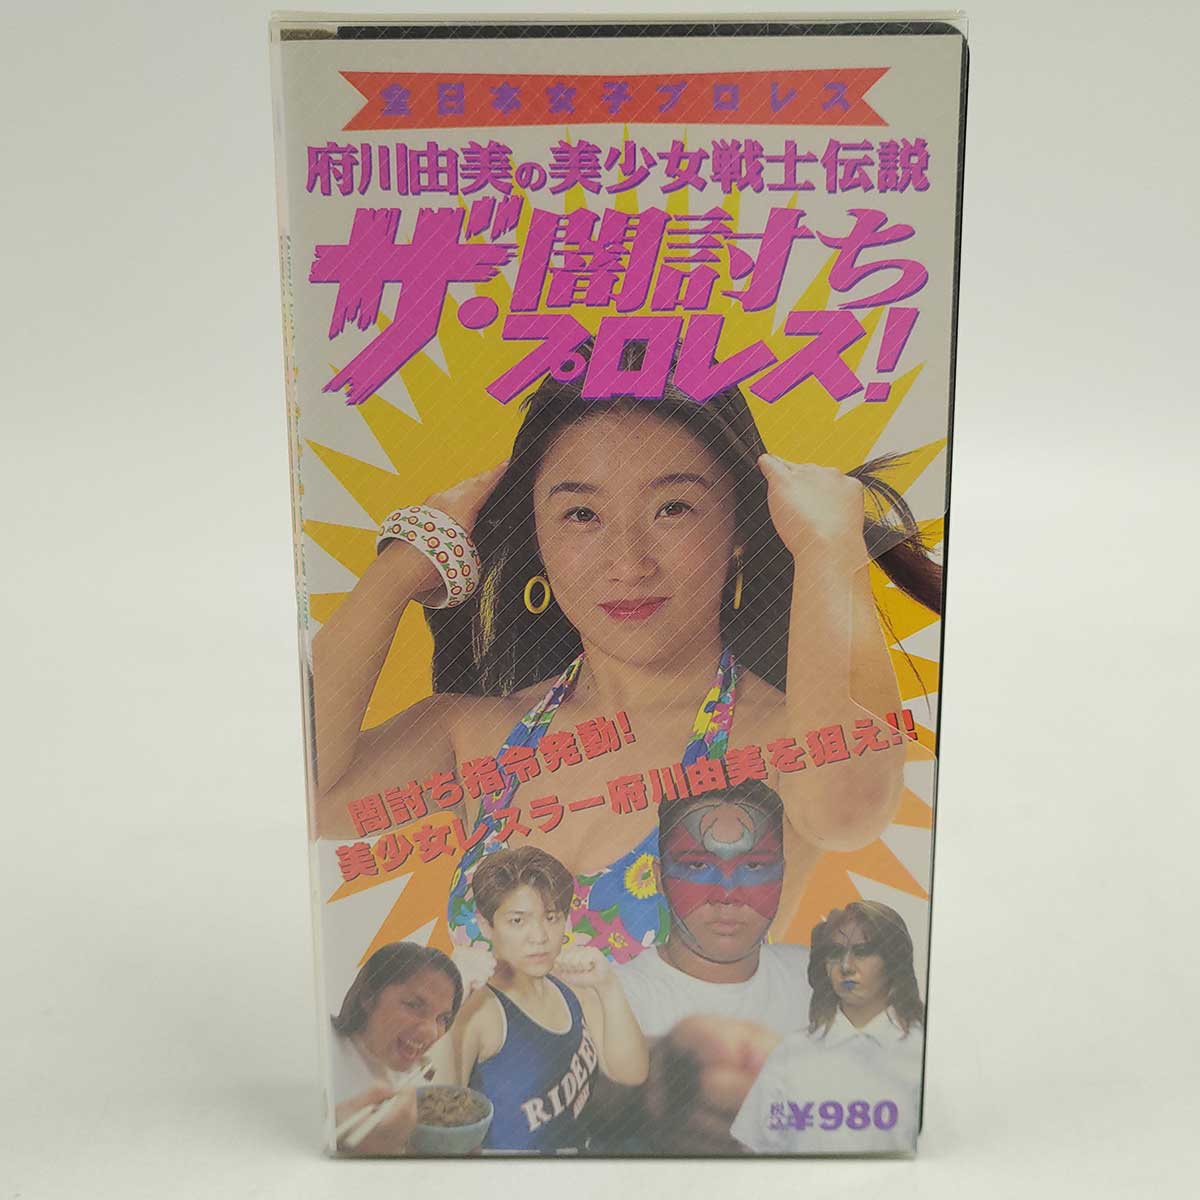 【中古】府川由美の美少女戦士伝説 ザ 闇討ちプロレス VHS 女子プロレス